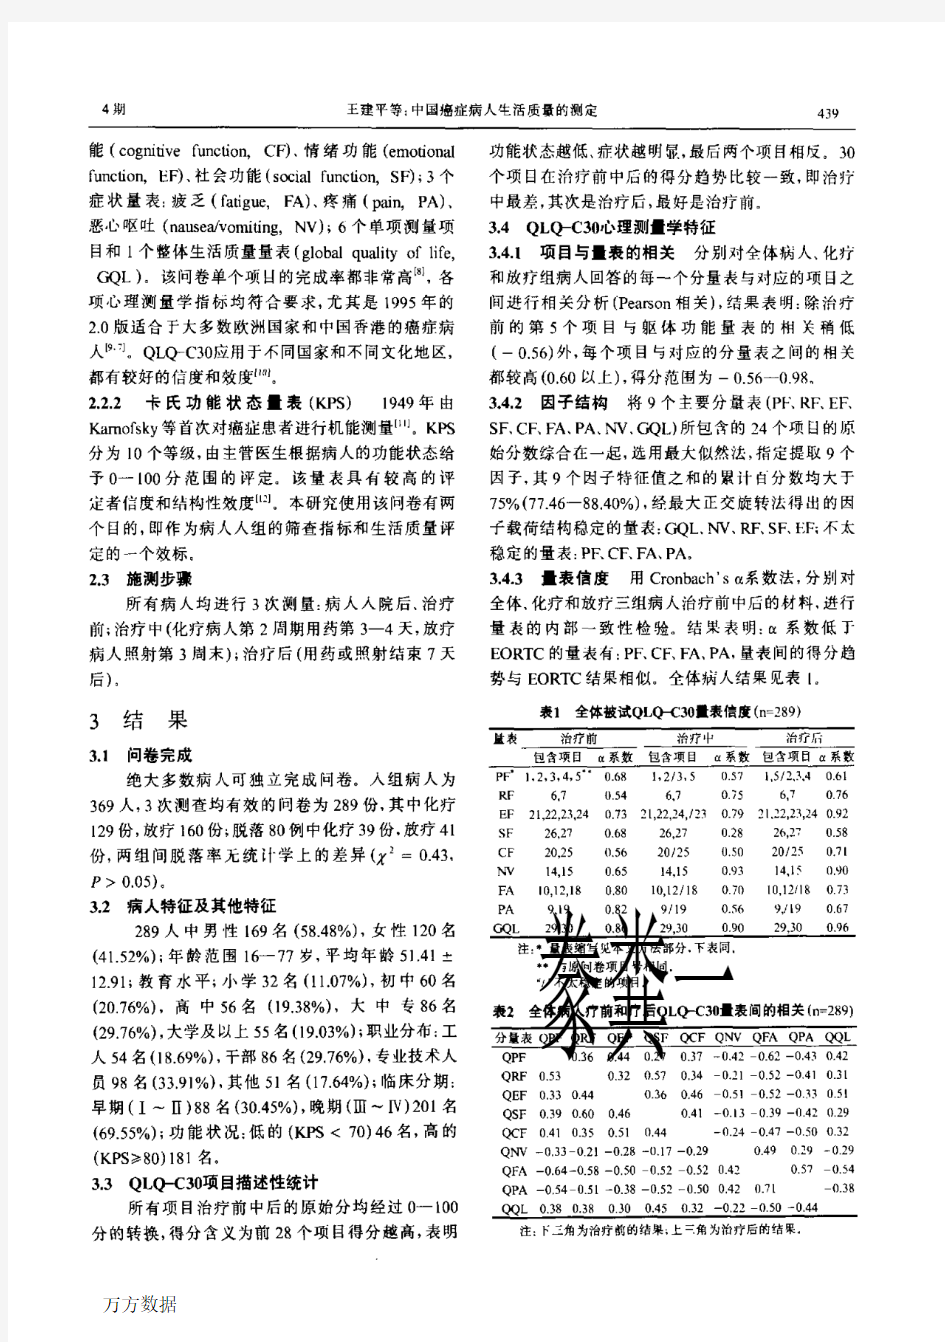 中国癌症病人生活质量的测定EORTC+QLQC30在中国的试用